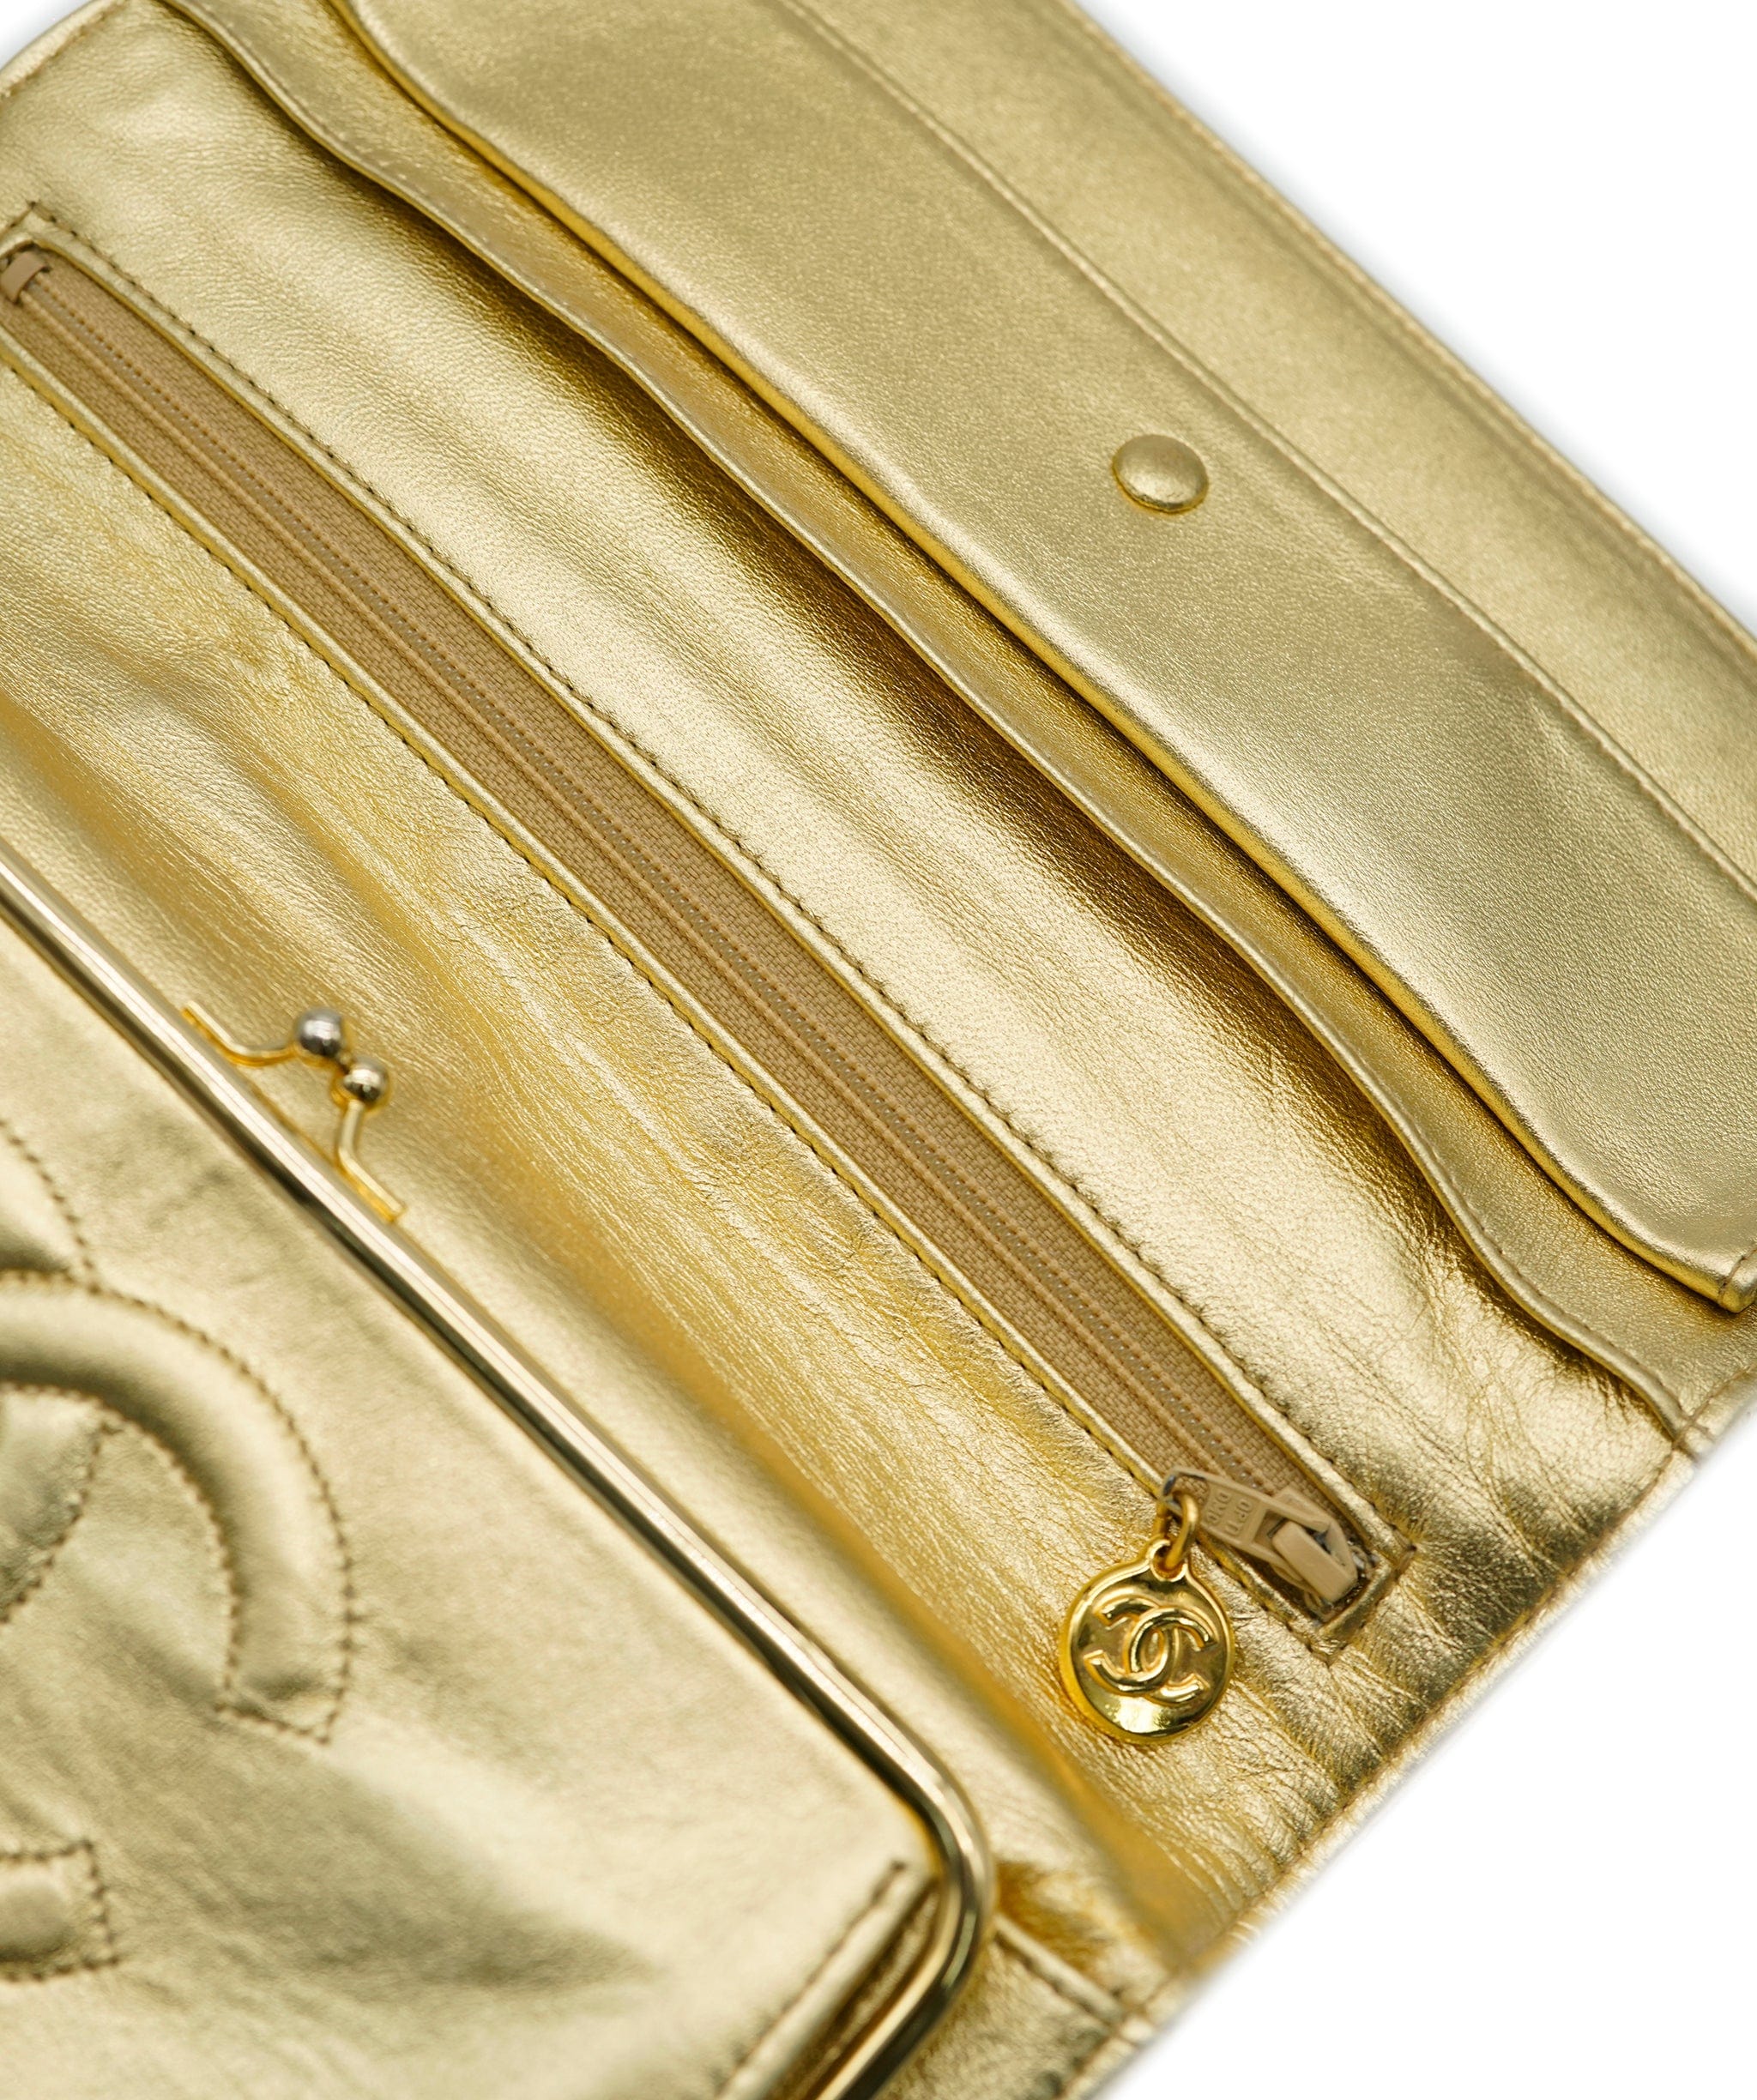 Chanel Chanel Metallic Gold Clutch  ALC1282